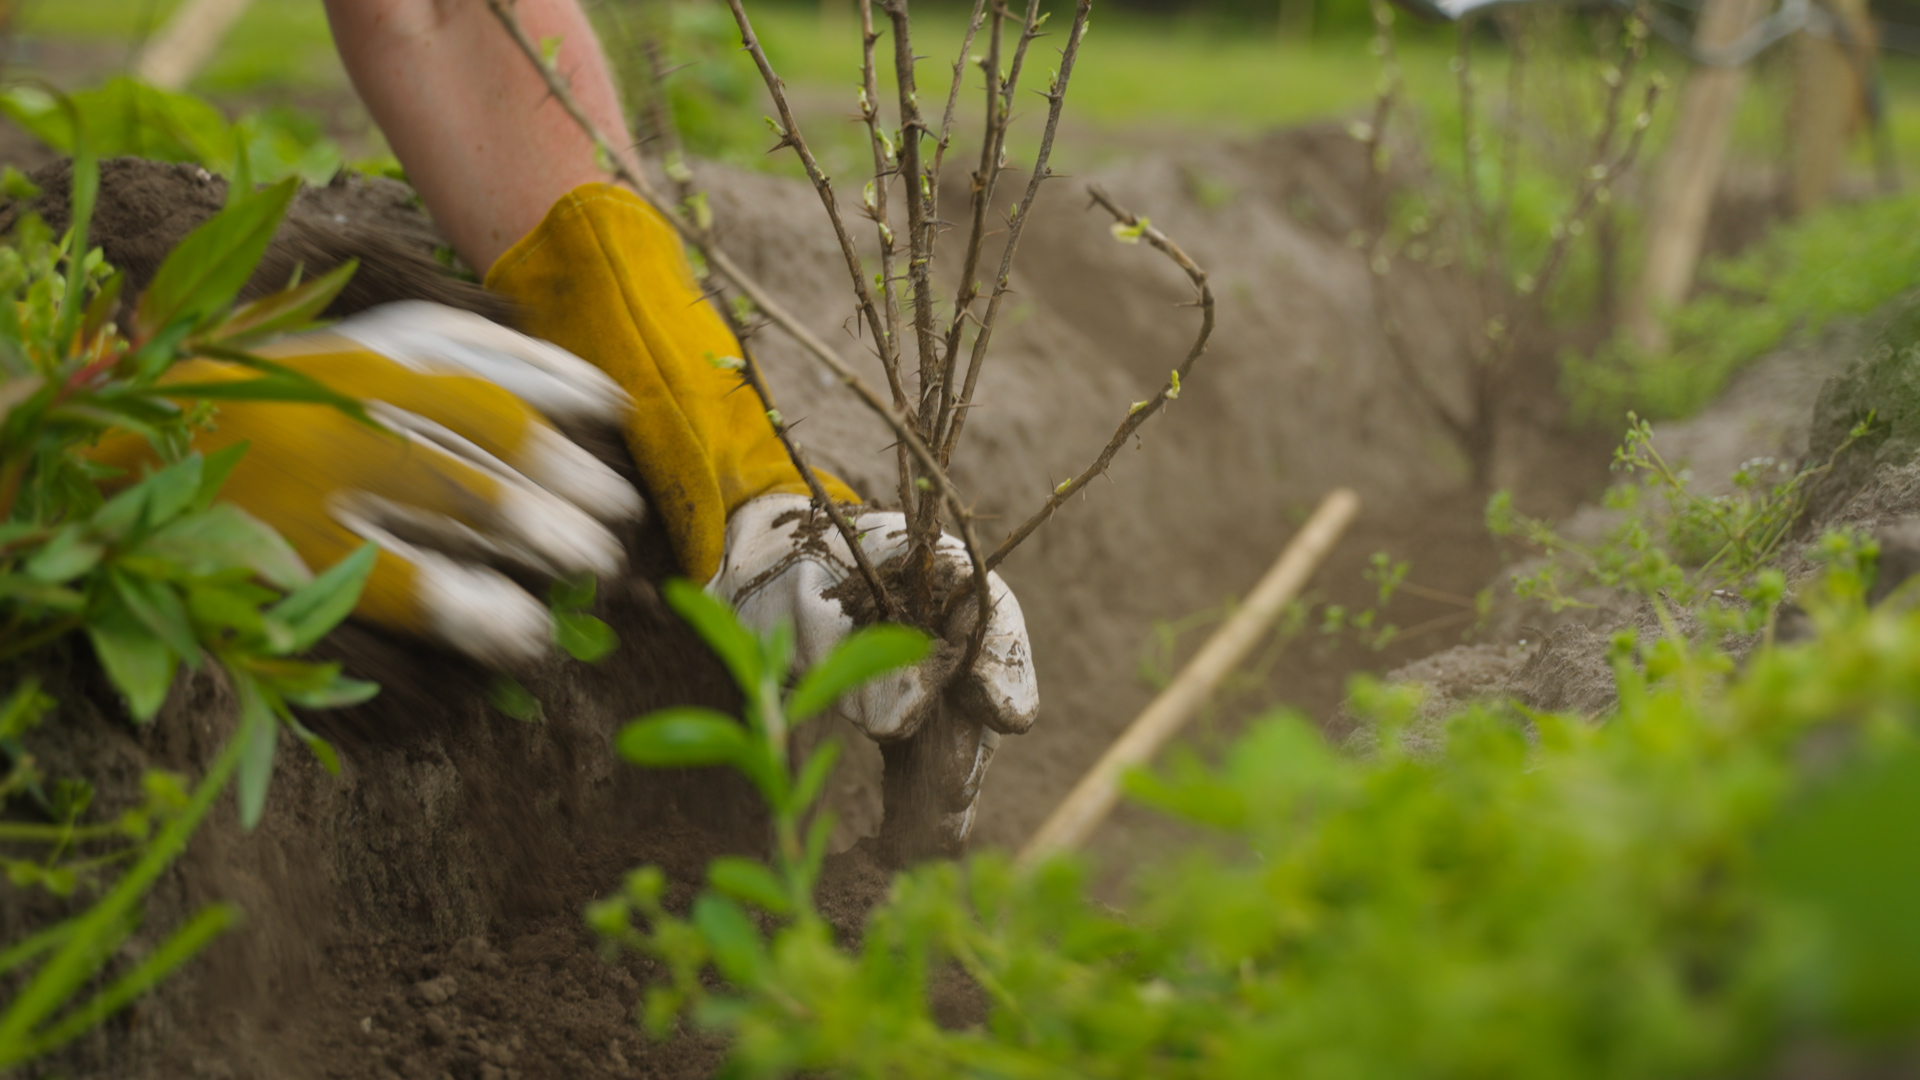 Werknemers die bomen en gewassen planten in een nieuw agroforestry-systeem, een directe toepassing van duurzame landbouw op locatie.